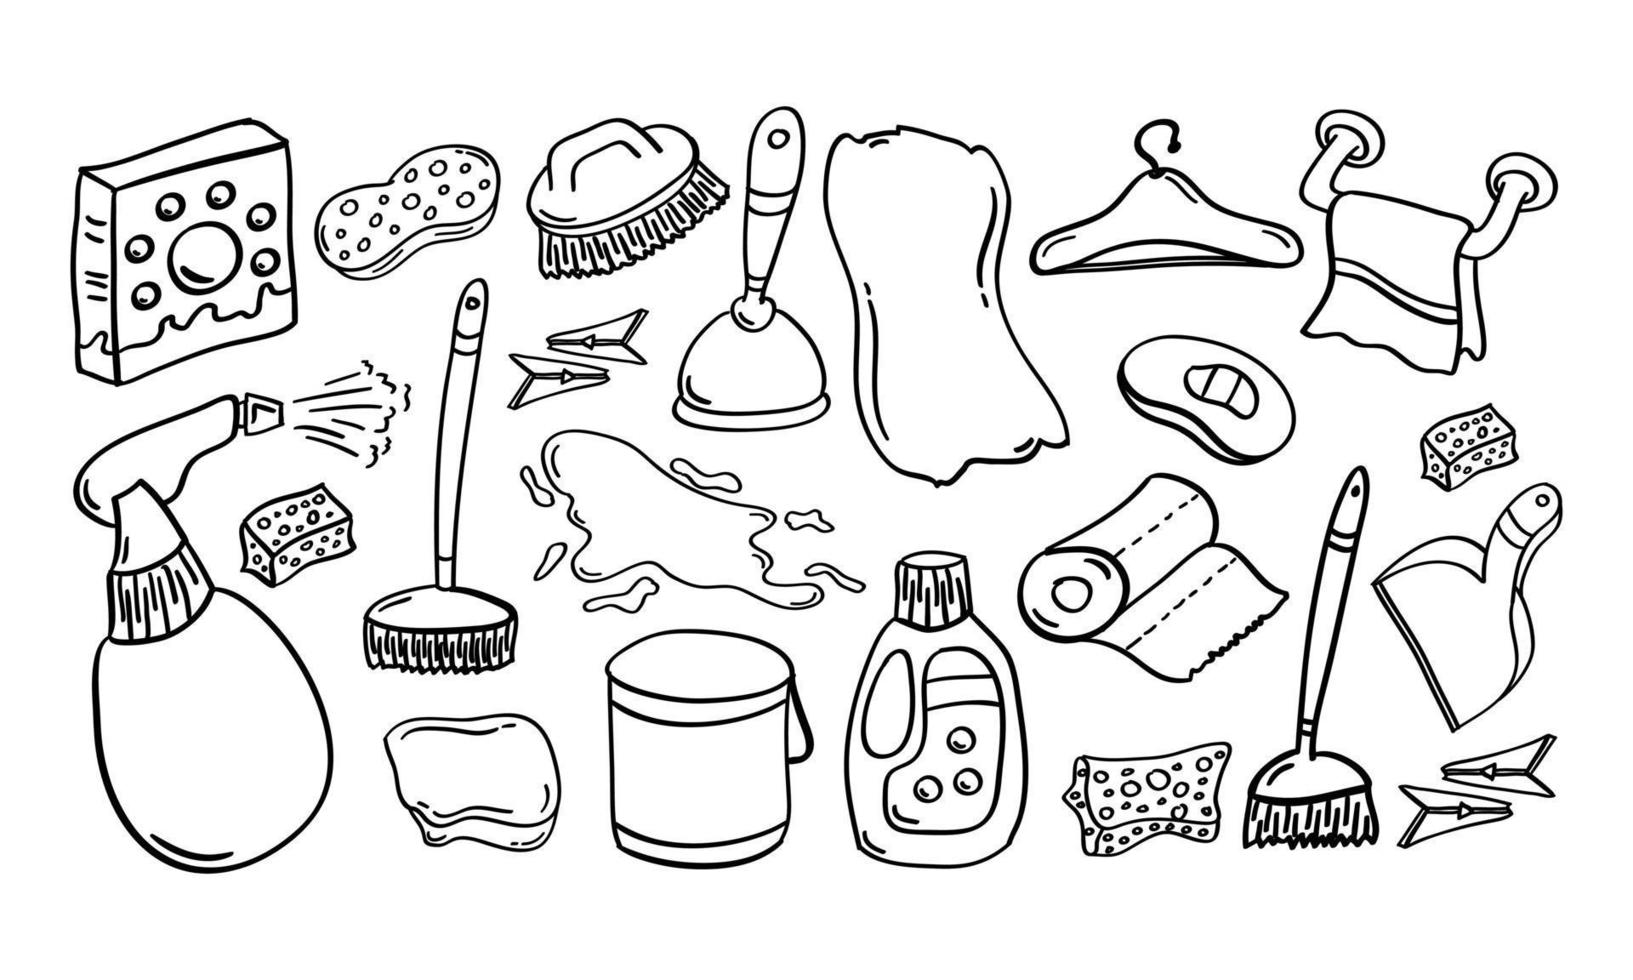 iconos de limpieza o limpieza del hogar dibujados a mano vector